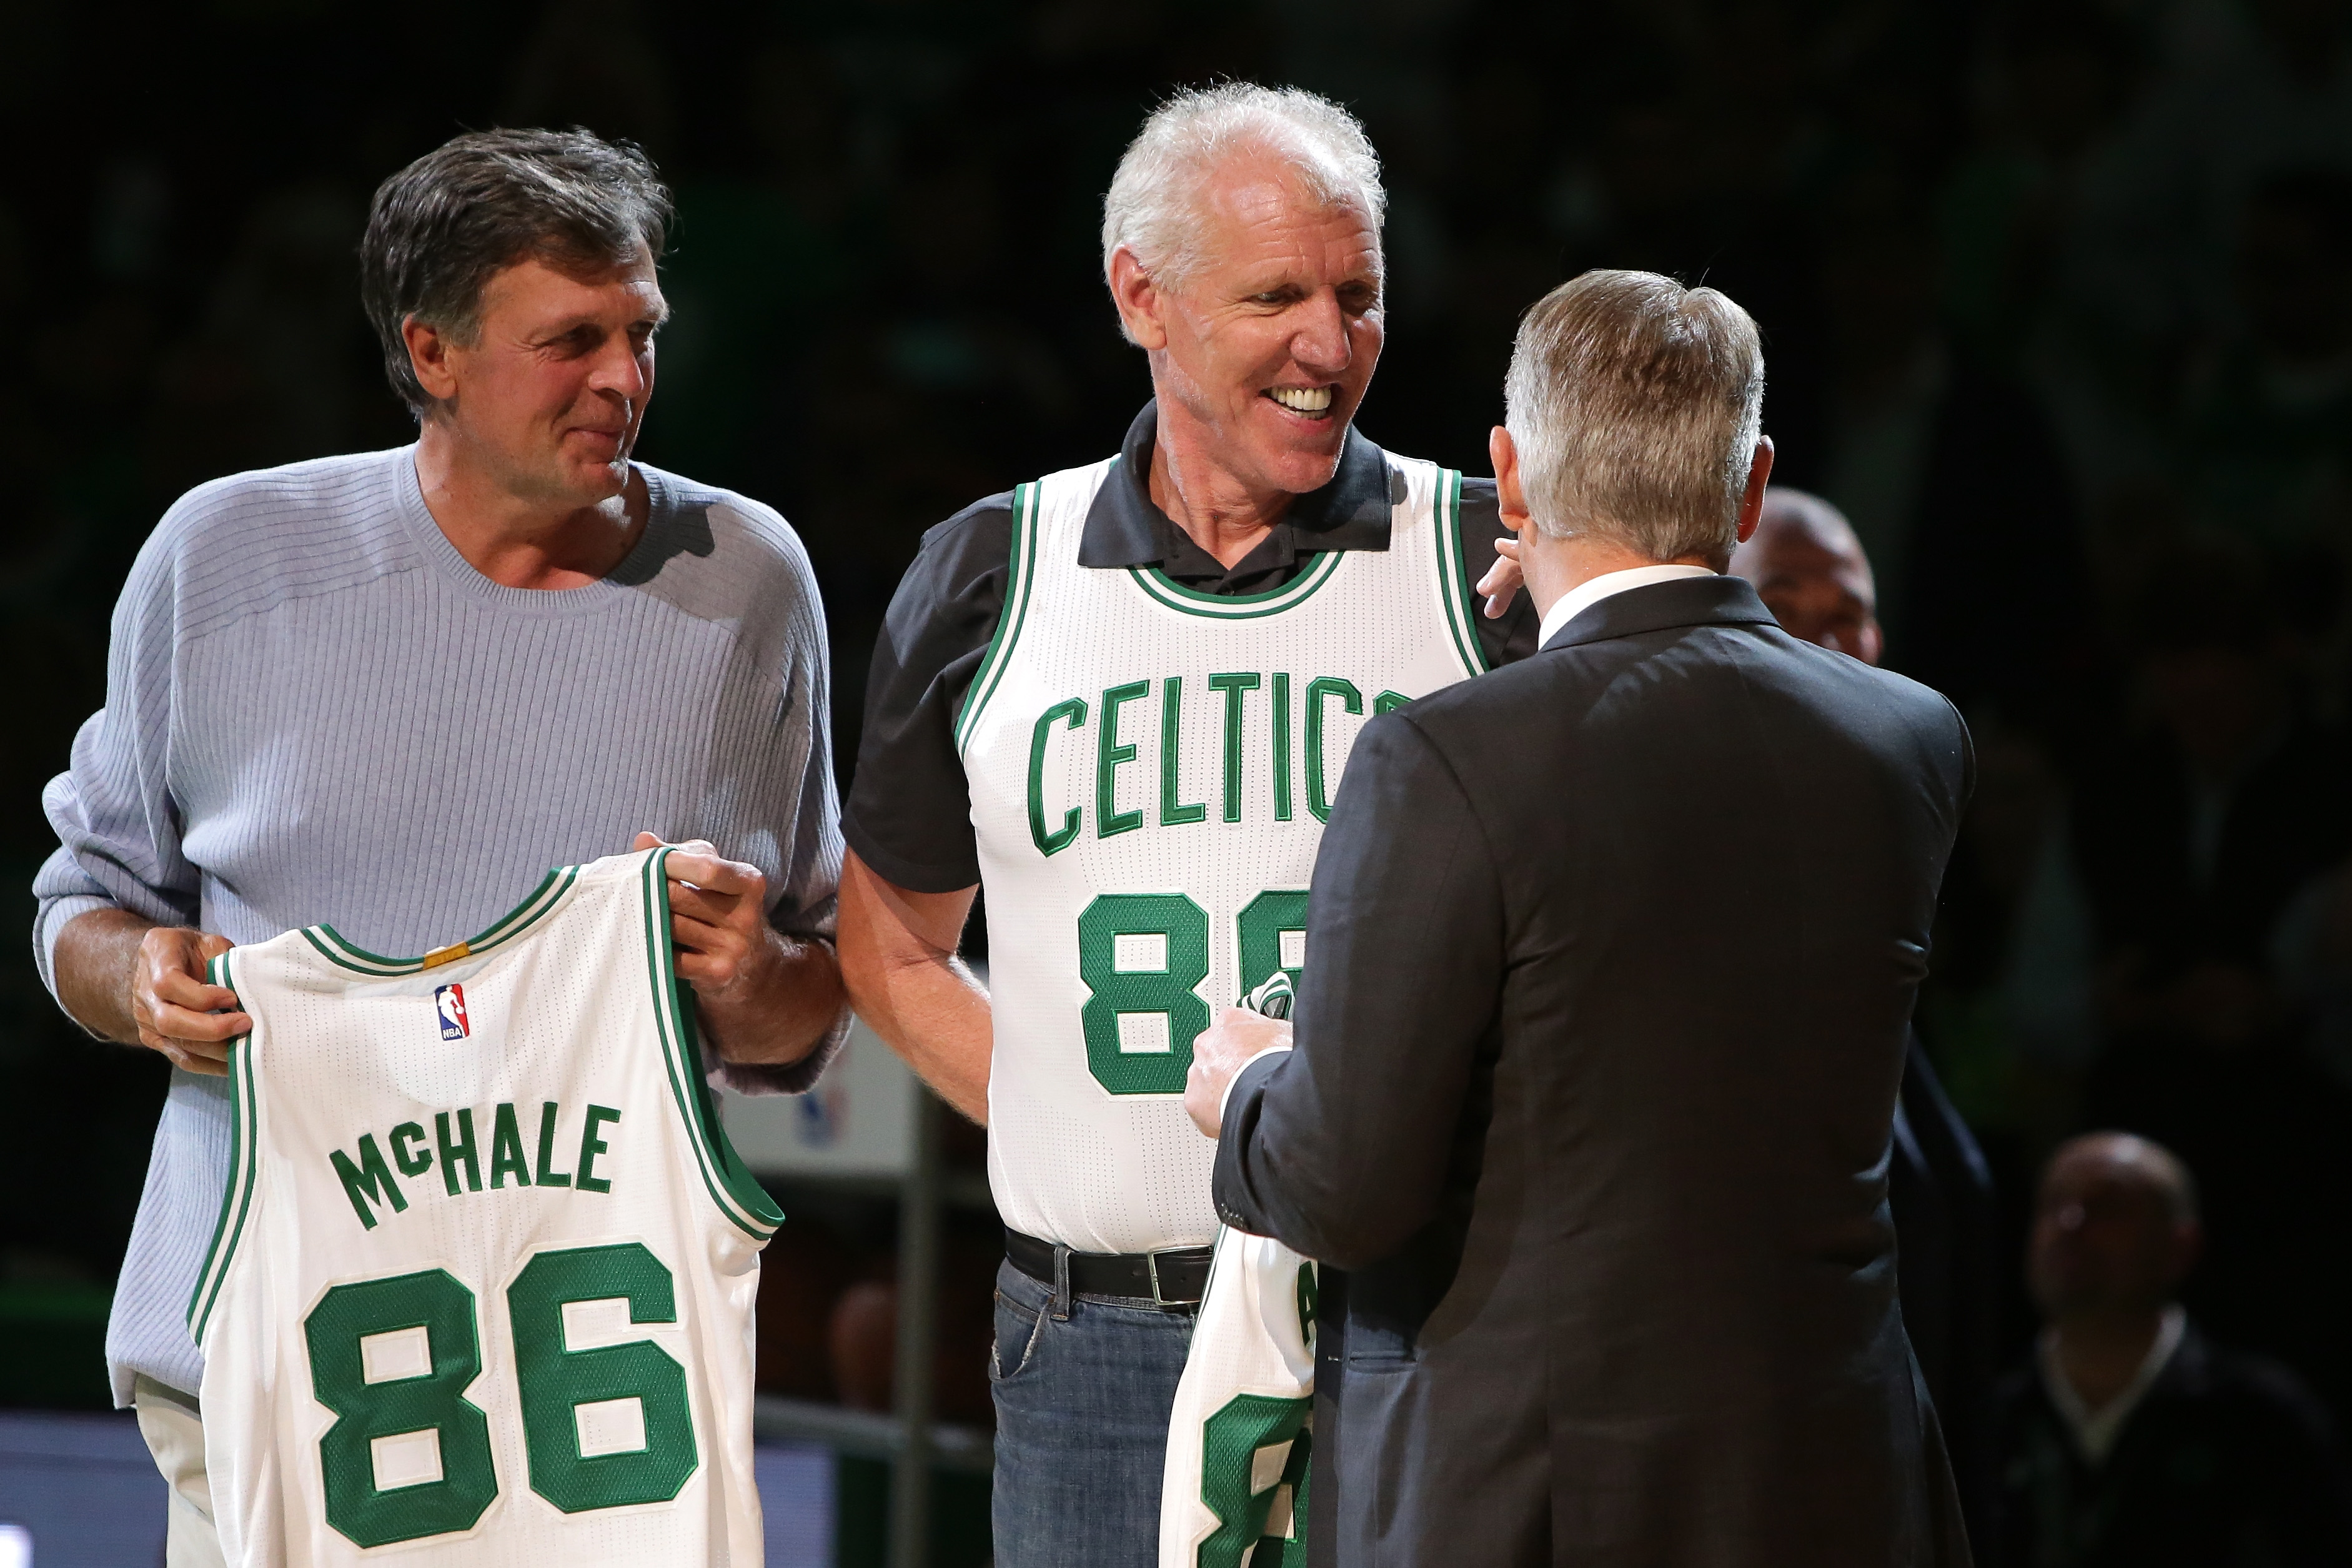 Grateful Dead, Bill Walton, Boston Celtics all collided 35 years ago